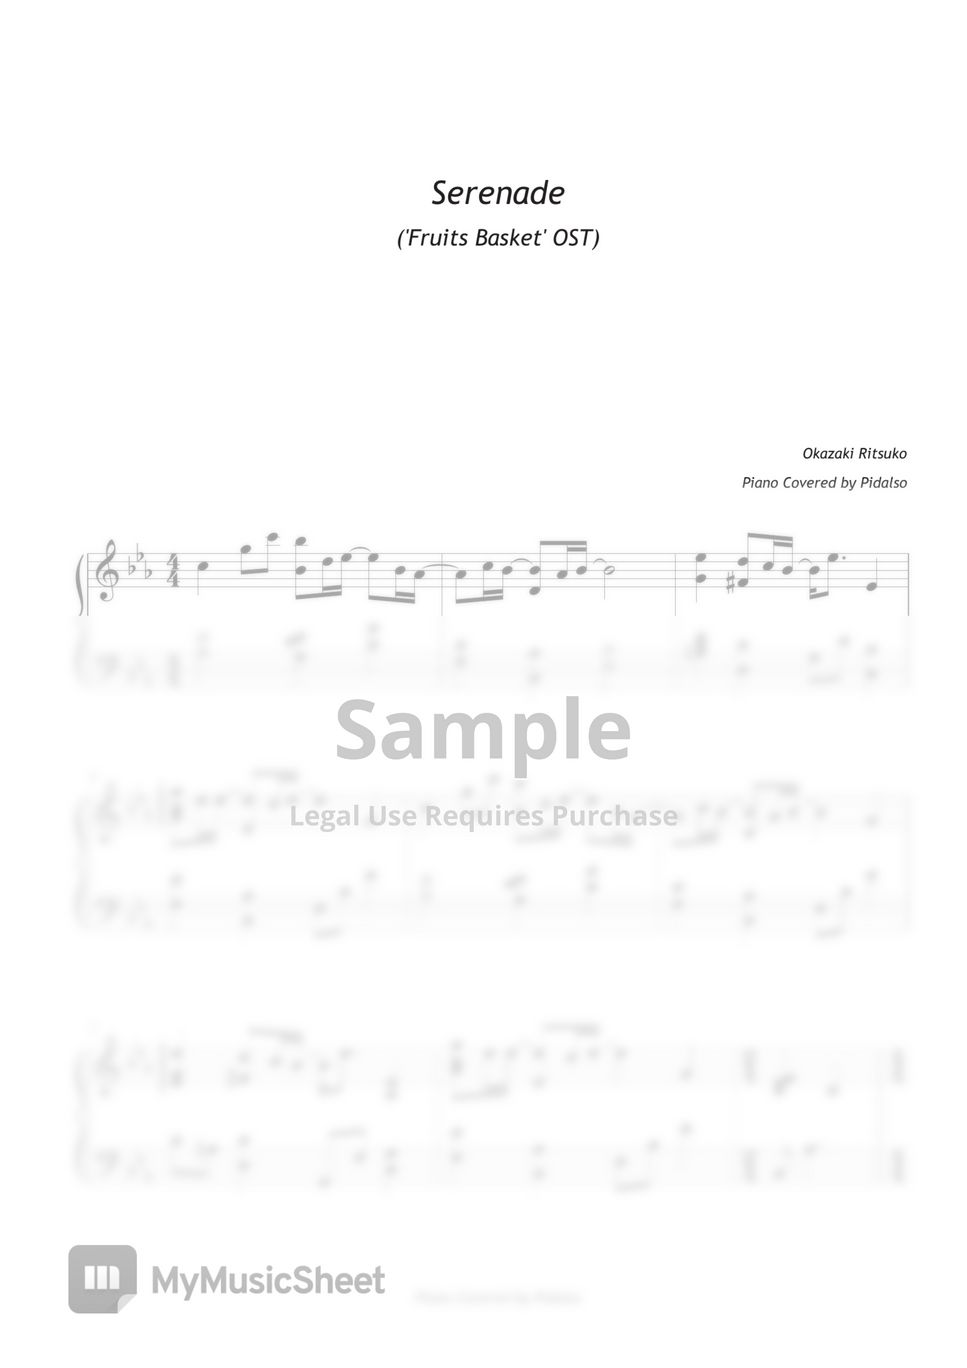 후르츠 바스켓 - Serenade by 피달소(Pidalso)